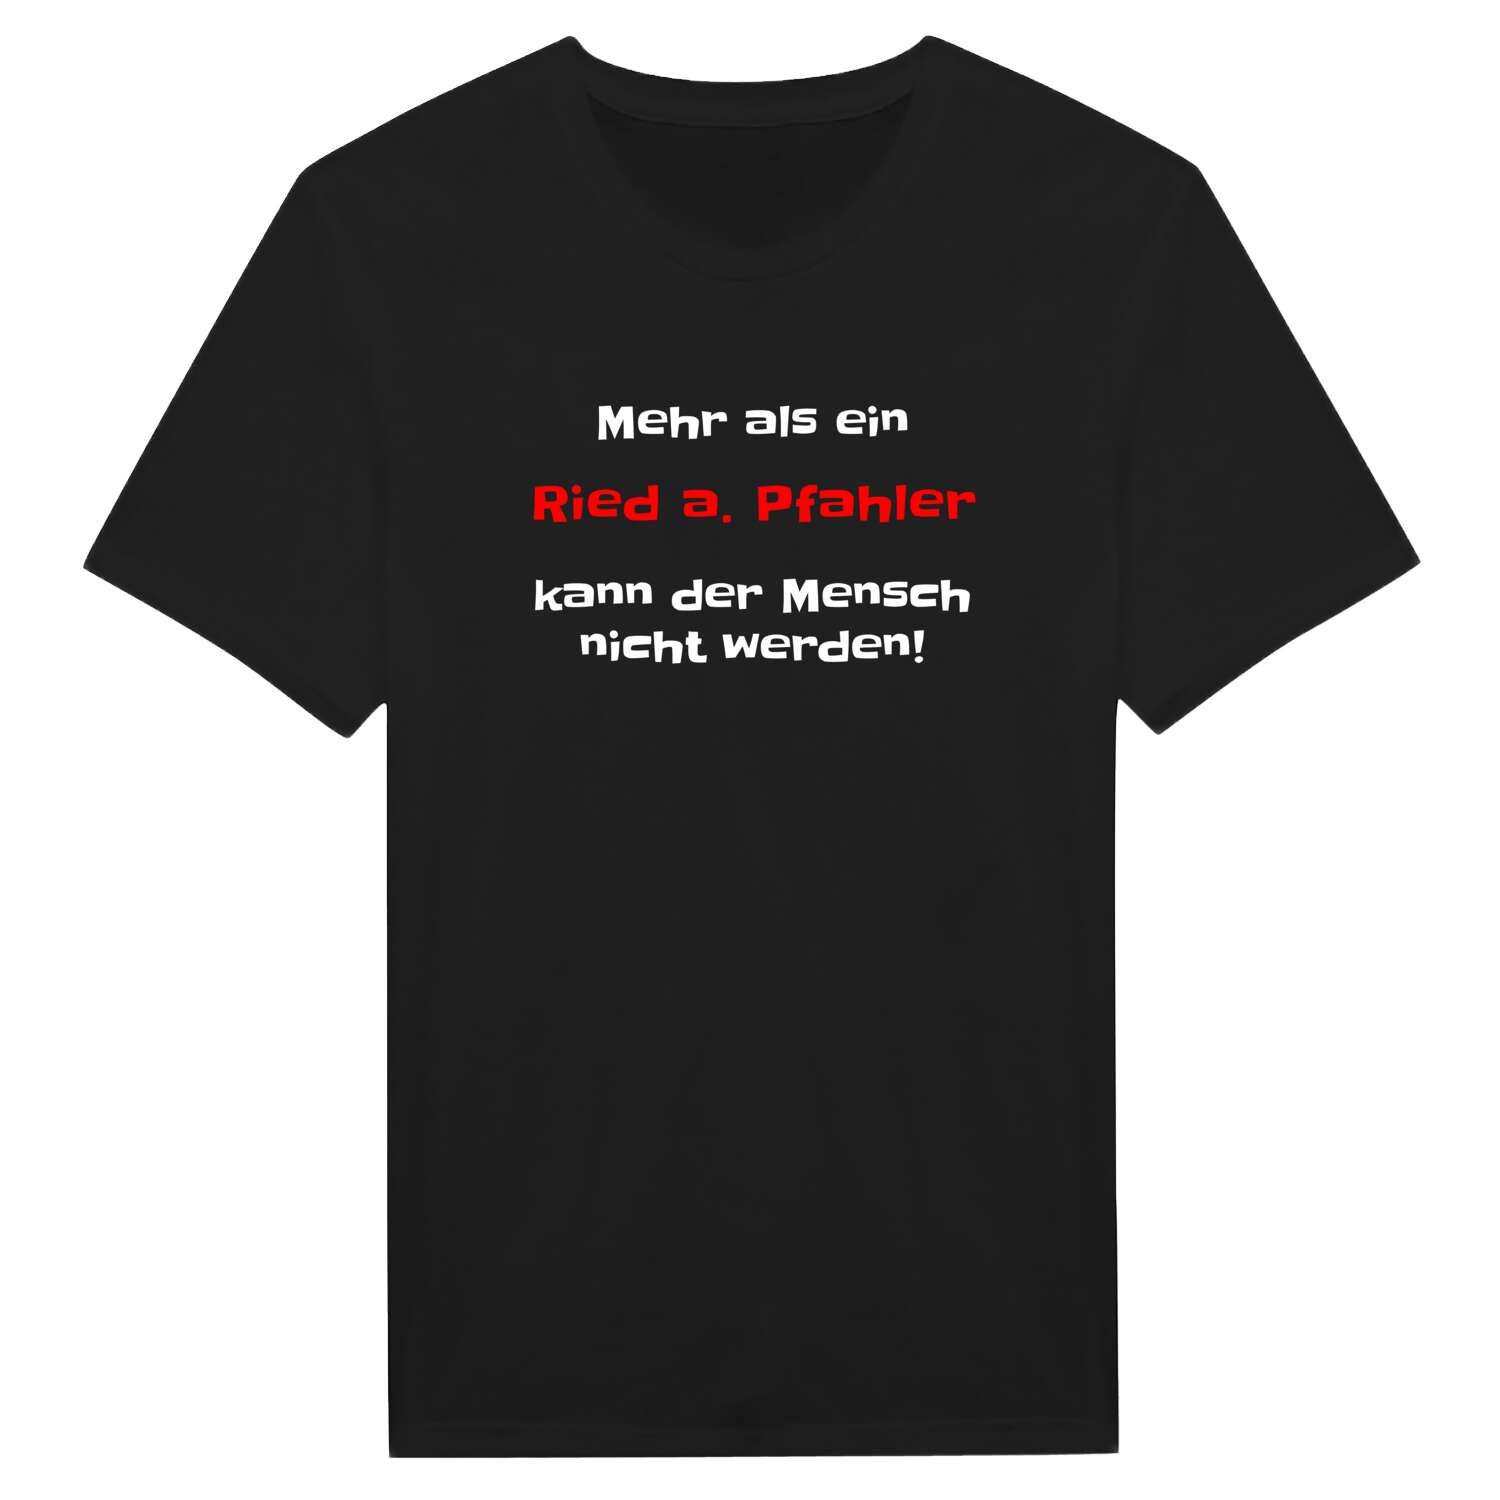 Ried a. Pfahl T-Shirt »Mehr als ein«